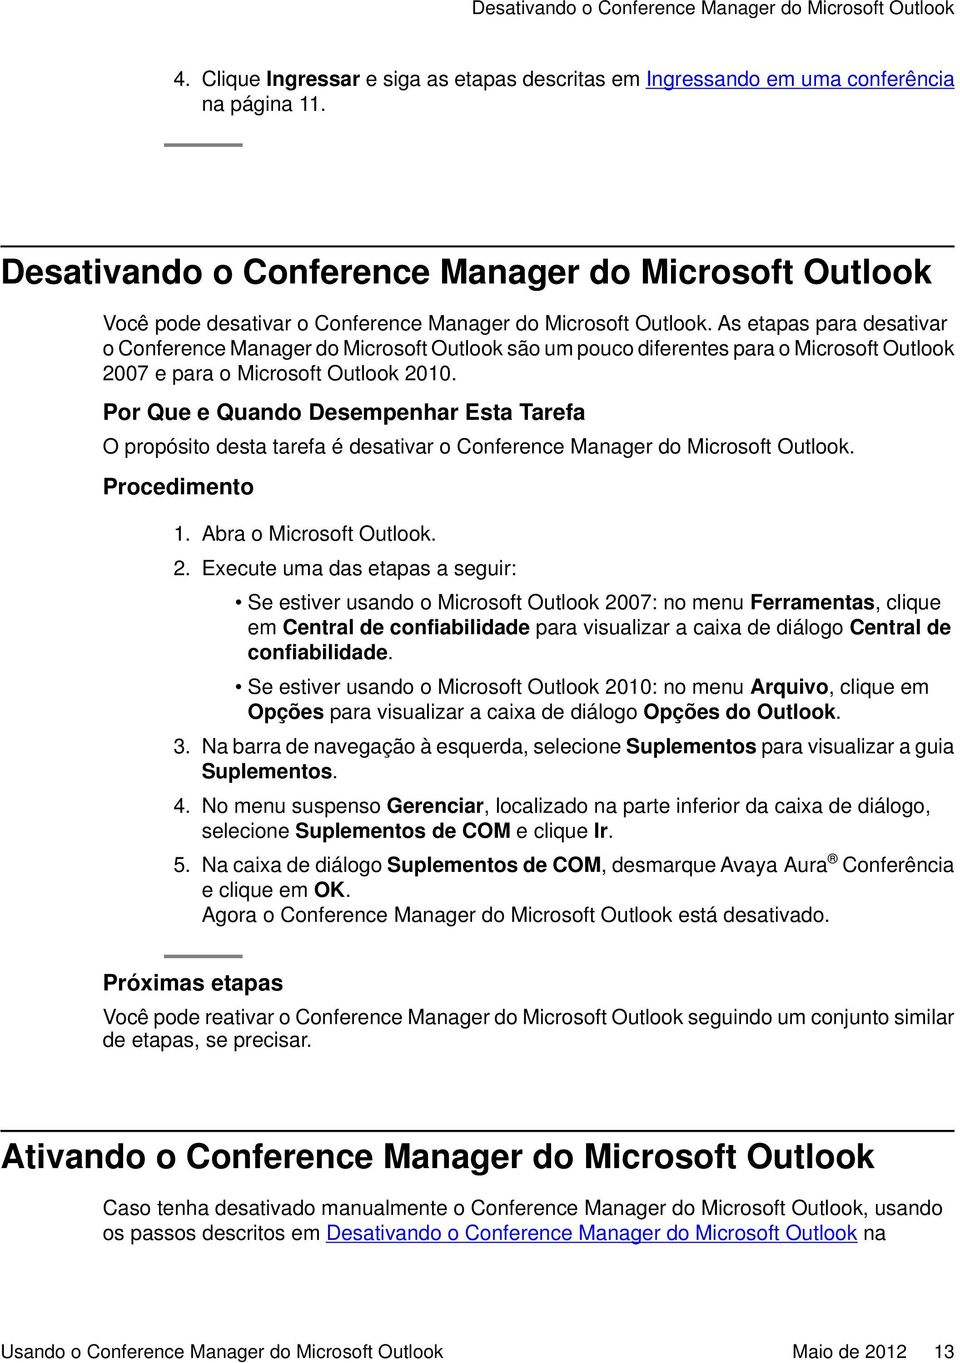 As etapas para desativar o Conference Manager do Microsoft Outlook são um pouco diferentes para o Microsoft Outlook 2007 e para o Microsoft Outlook 2010.